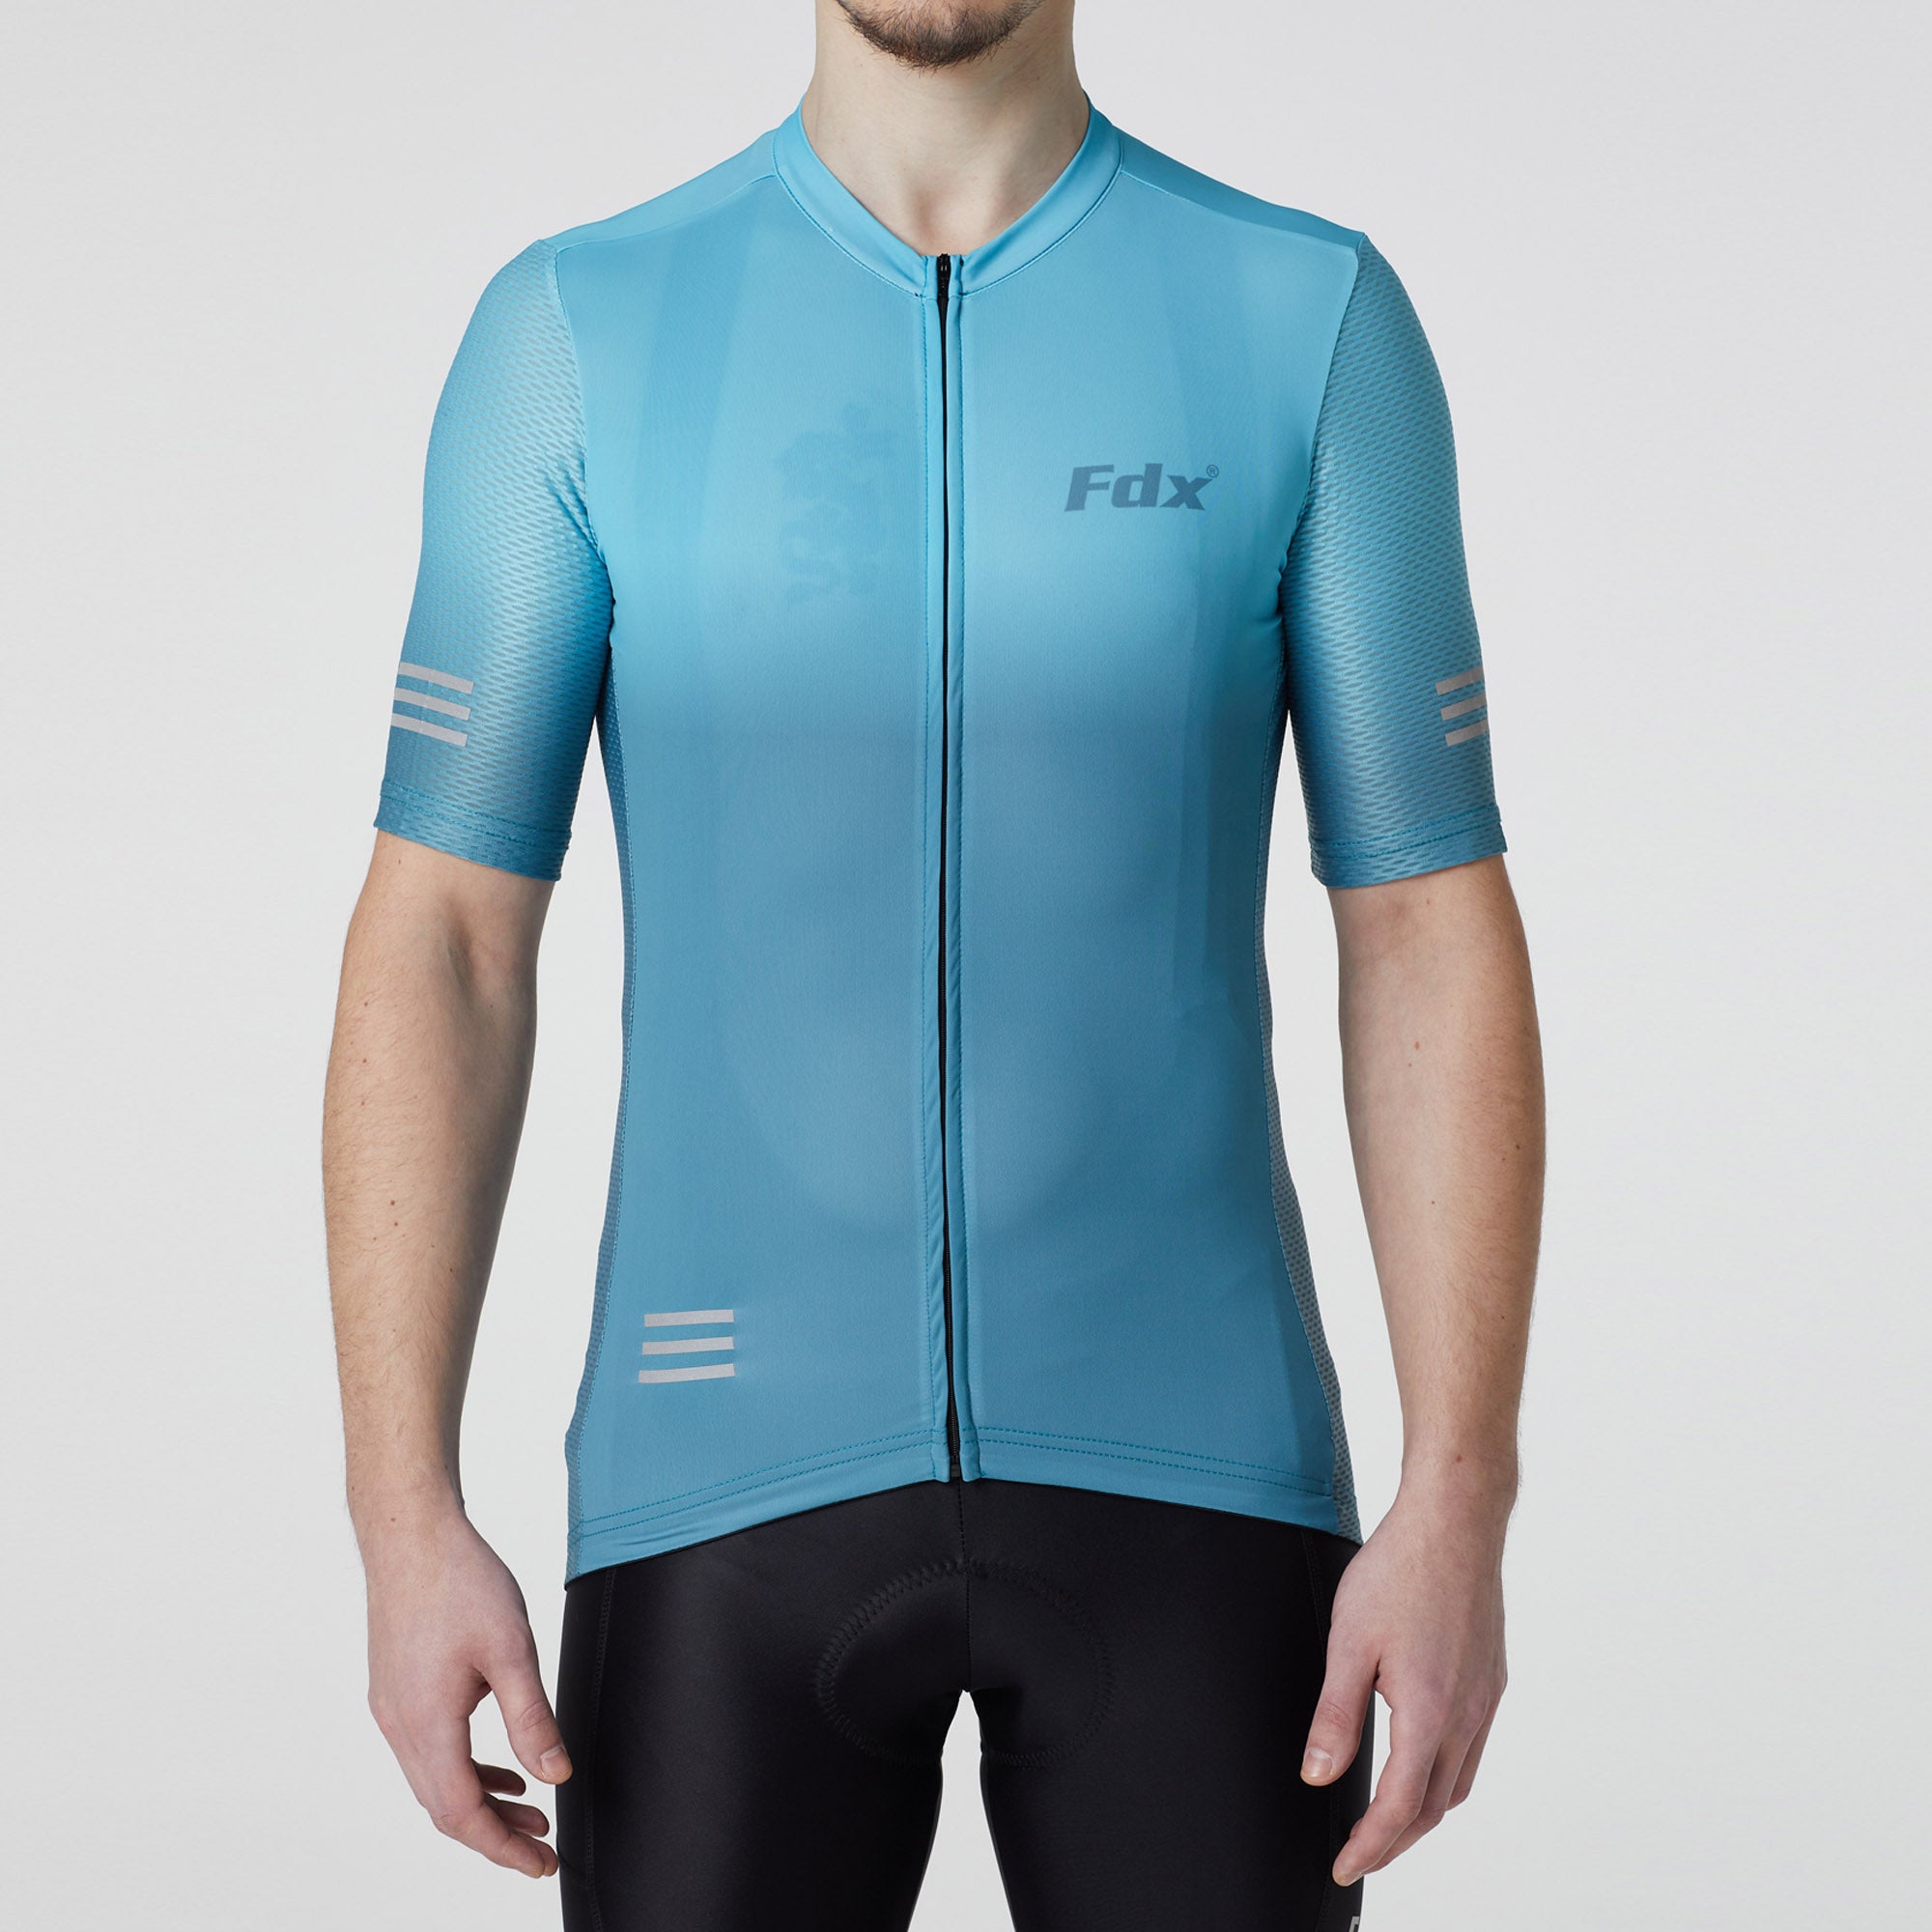 Fdx Mens Blue Short Sleeve Cycling Jersey for Summer Best Road Bike Wear Top Light Weight, Full Zipper, Pockets & Hi-viz Reflectors - Duo